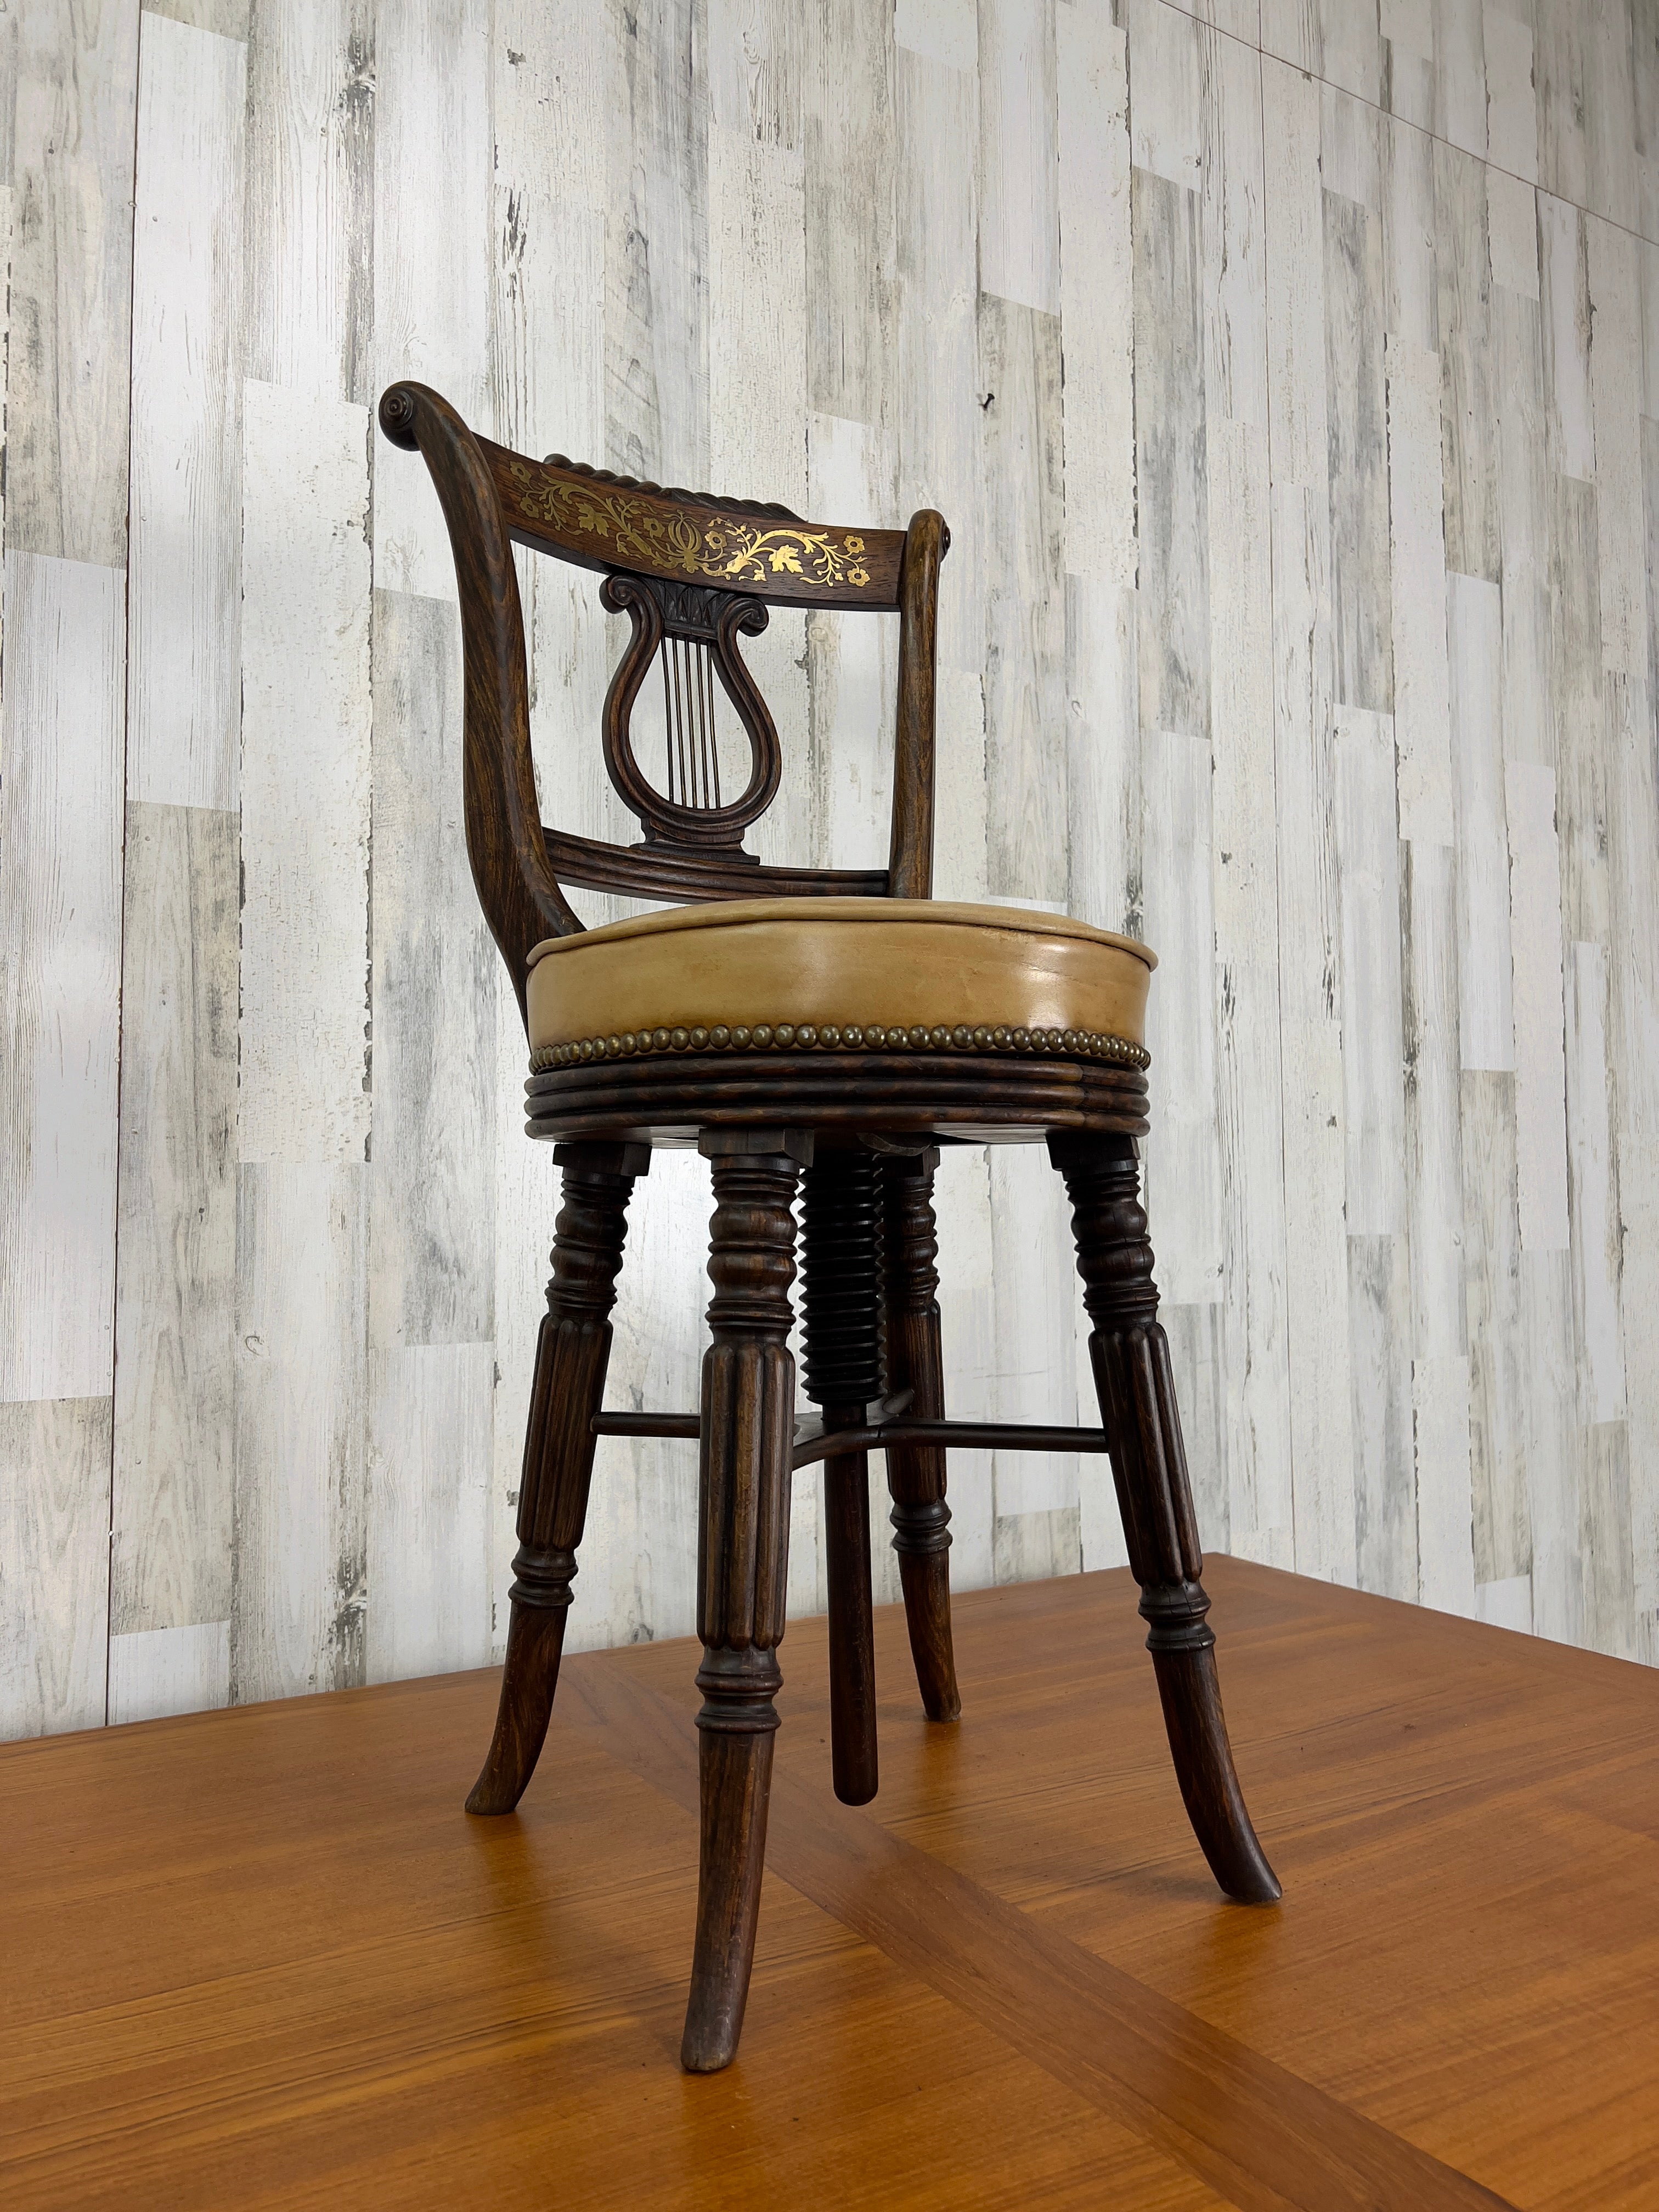 Chaise musicale en bois dur fabriquée à la main avec incrustation de laiton sur le dossier de la chaise et siège fileté pour le réglage de la hauteur. Le siège en cuir a été remplacé à un moment donné.
Cette chaise était probablement utilisée pour